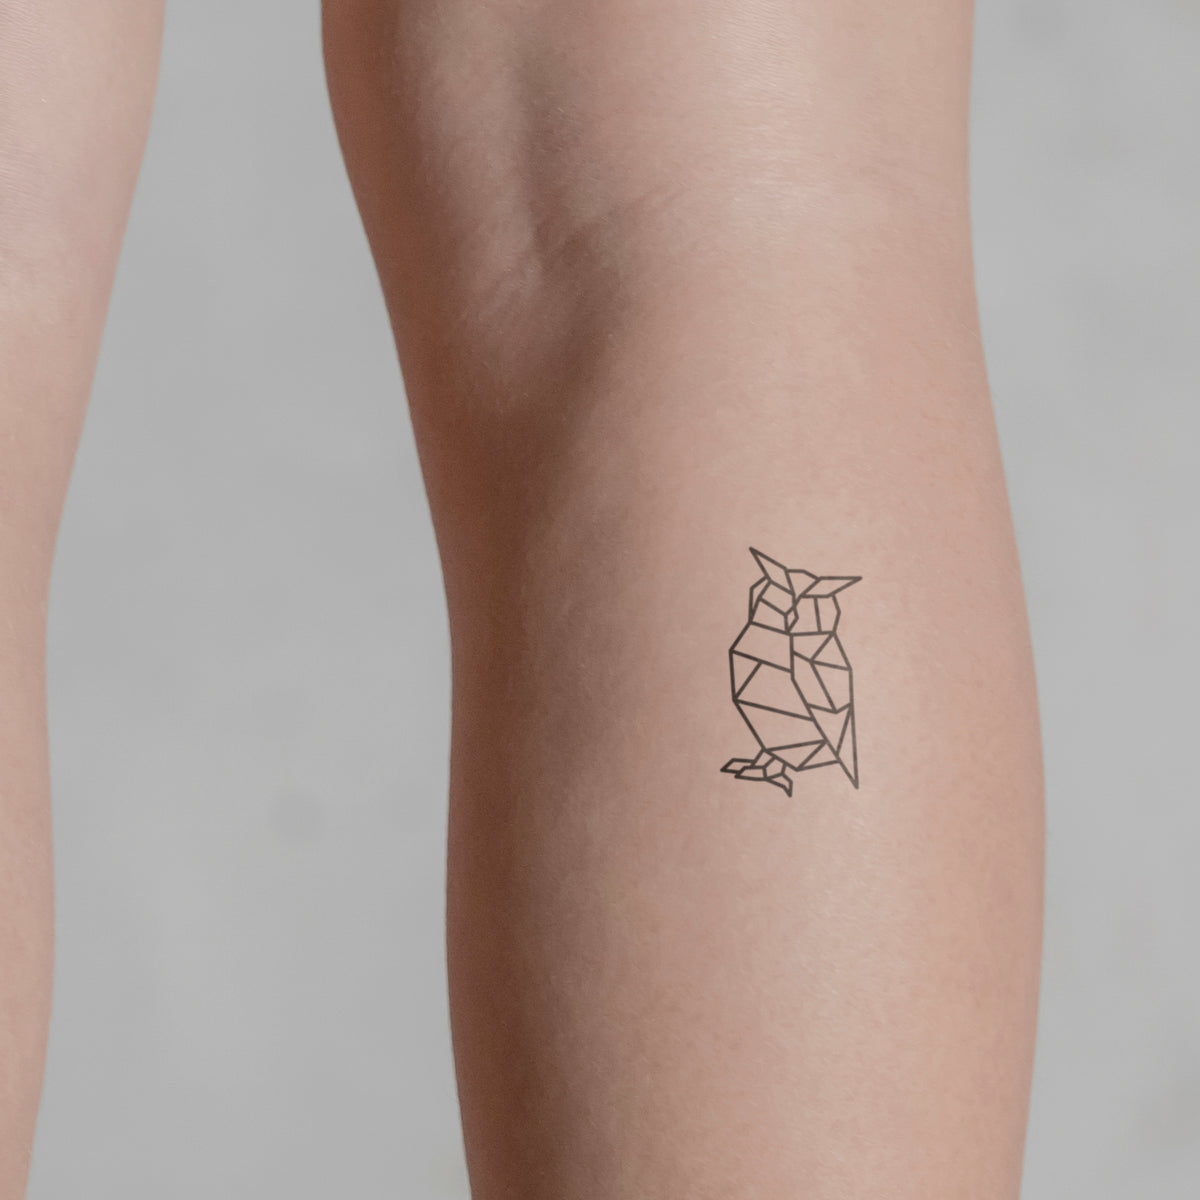 Geometric pattern tattoo on the left foot - Tattoogrid.net